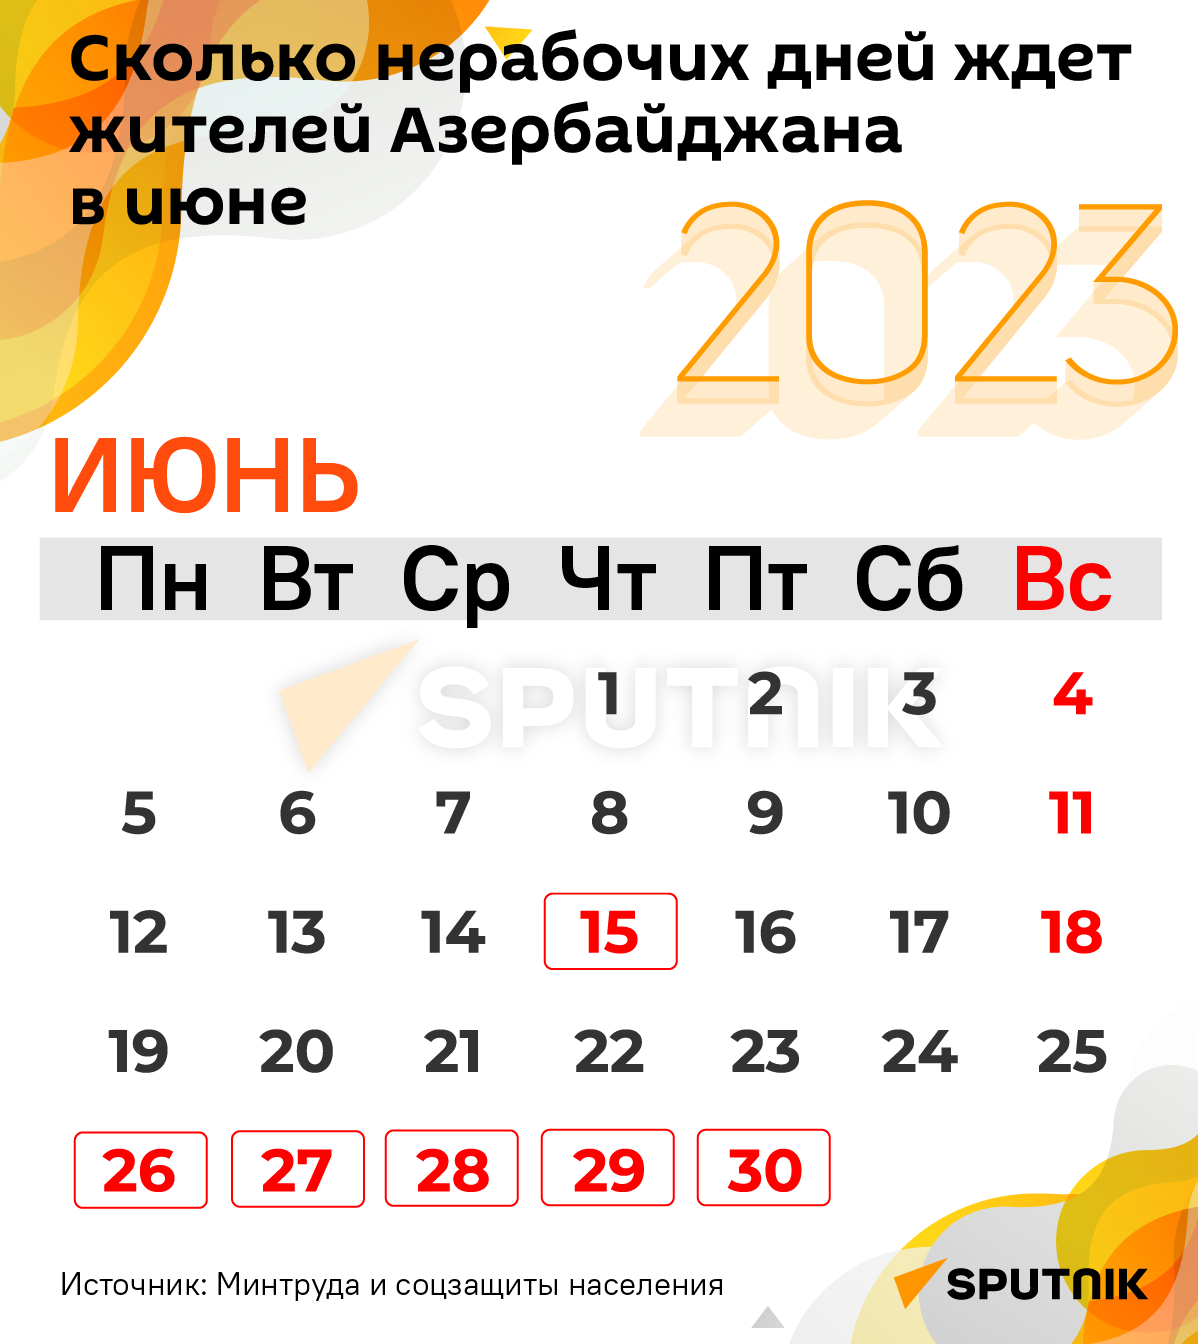 Инфографика: Сколько нерабочих дней ждет жителей Азербайджана в июле - Sputnik Азербайджан